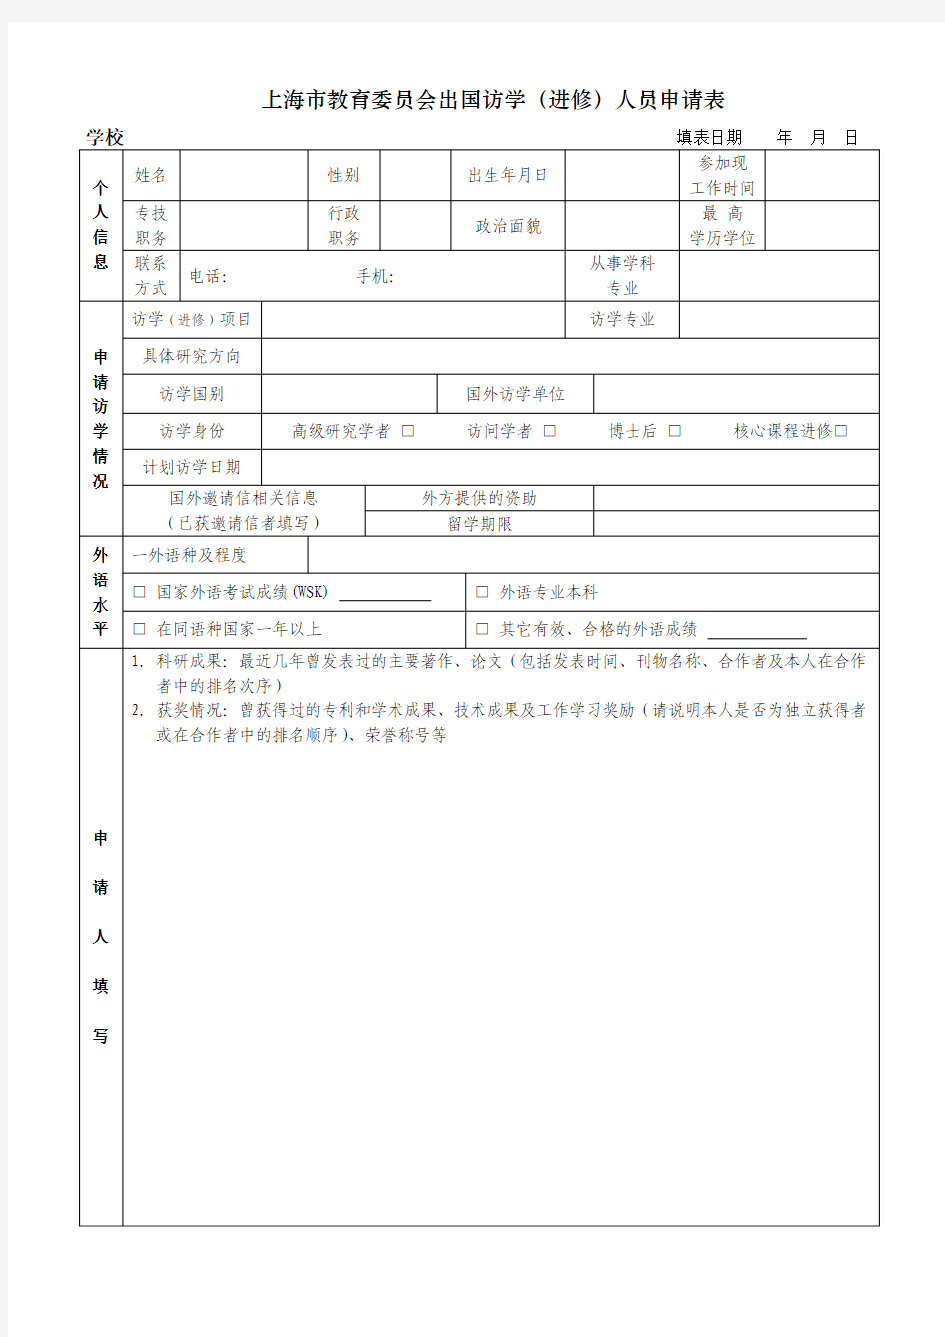 上海市教育委员会出国访学(进修)人员申请表